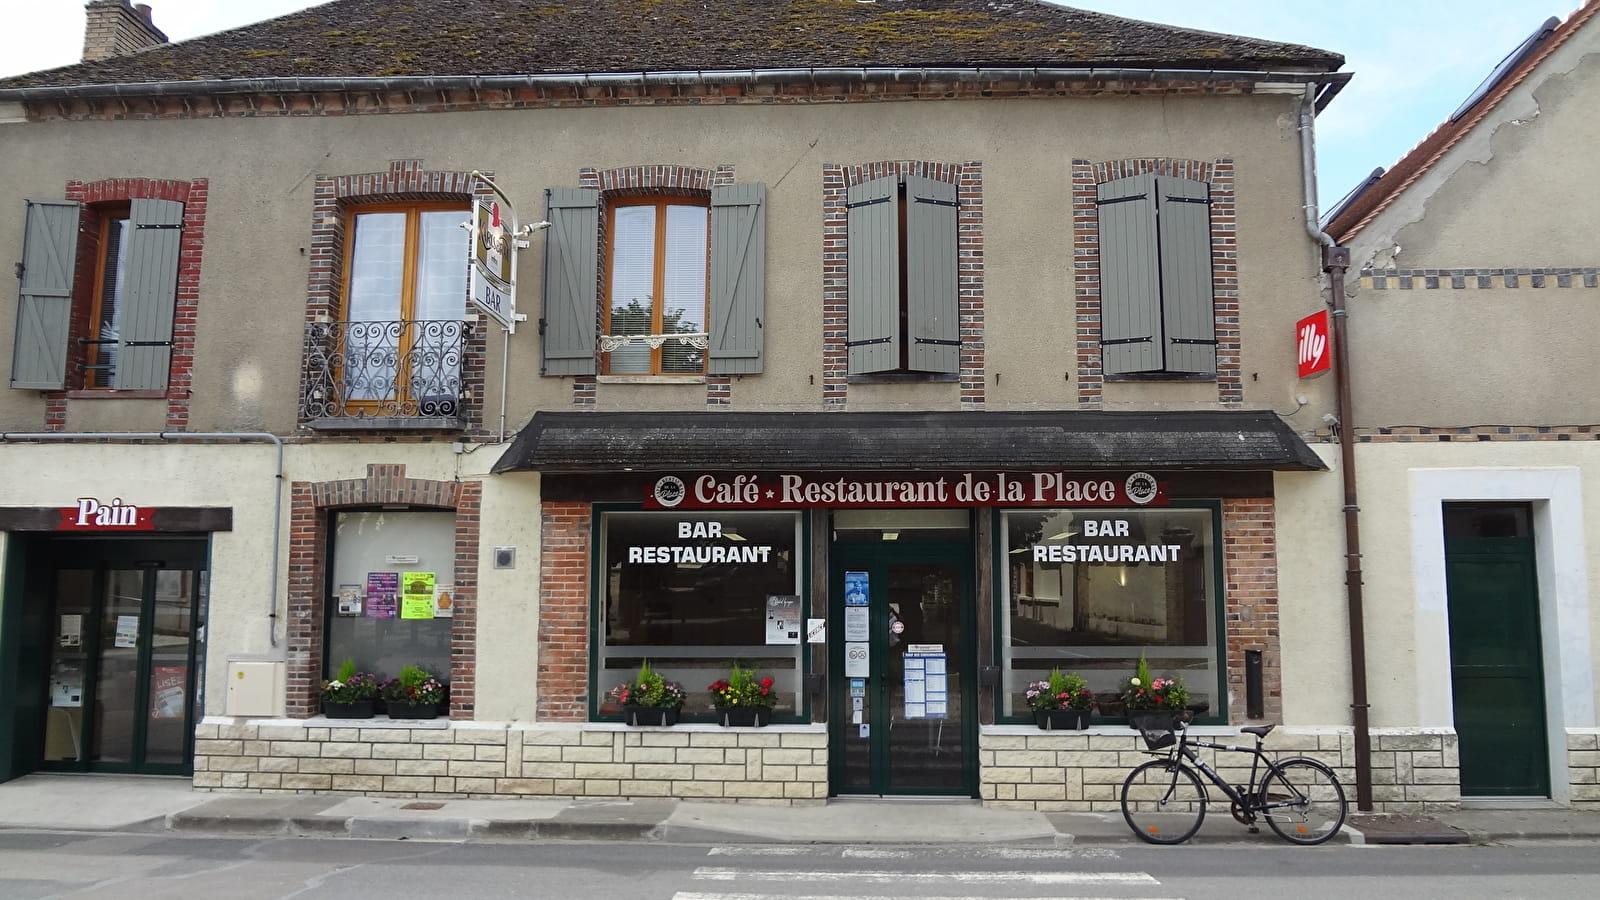 Café restaurant de la Place